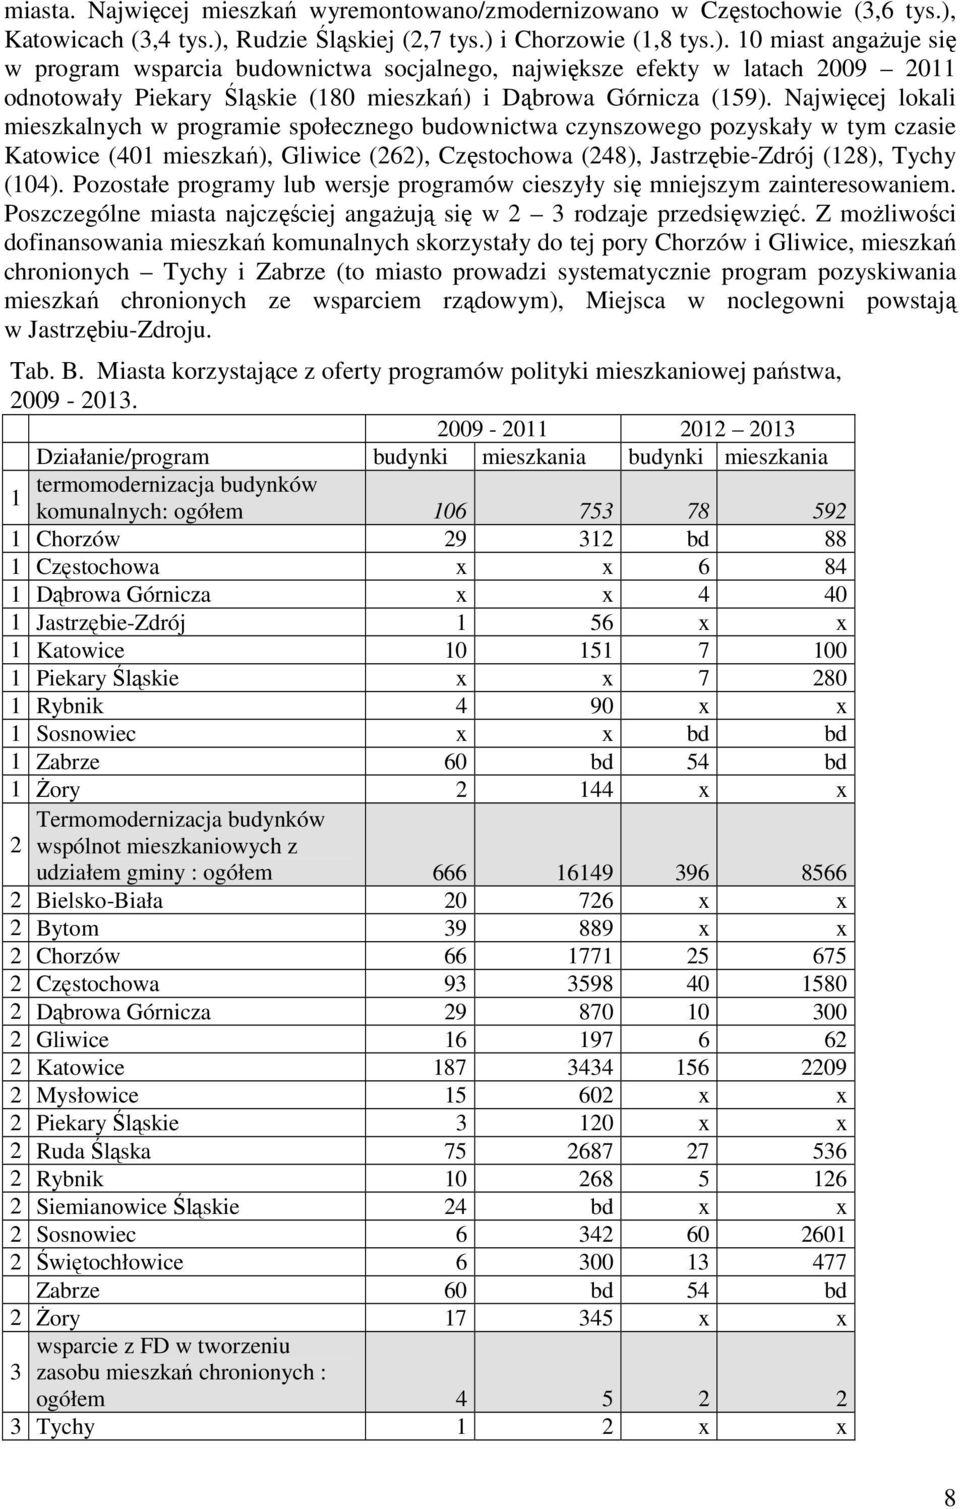 Najwięcej lokali mieszkalnych w programie społecznego budownictwa czynszowego pozyskały w tym czasie Katowice (401 mieszkań), Gliwice (262), Częstochowa (248), Jastrzębie-Zdrój (128), Tychy (104).